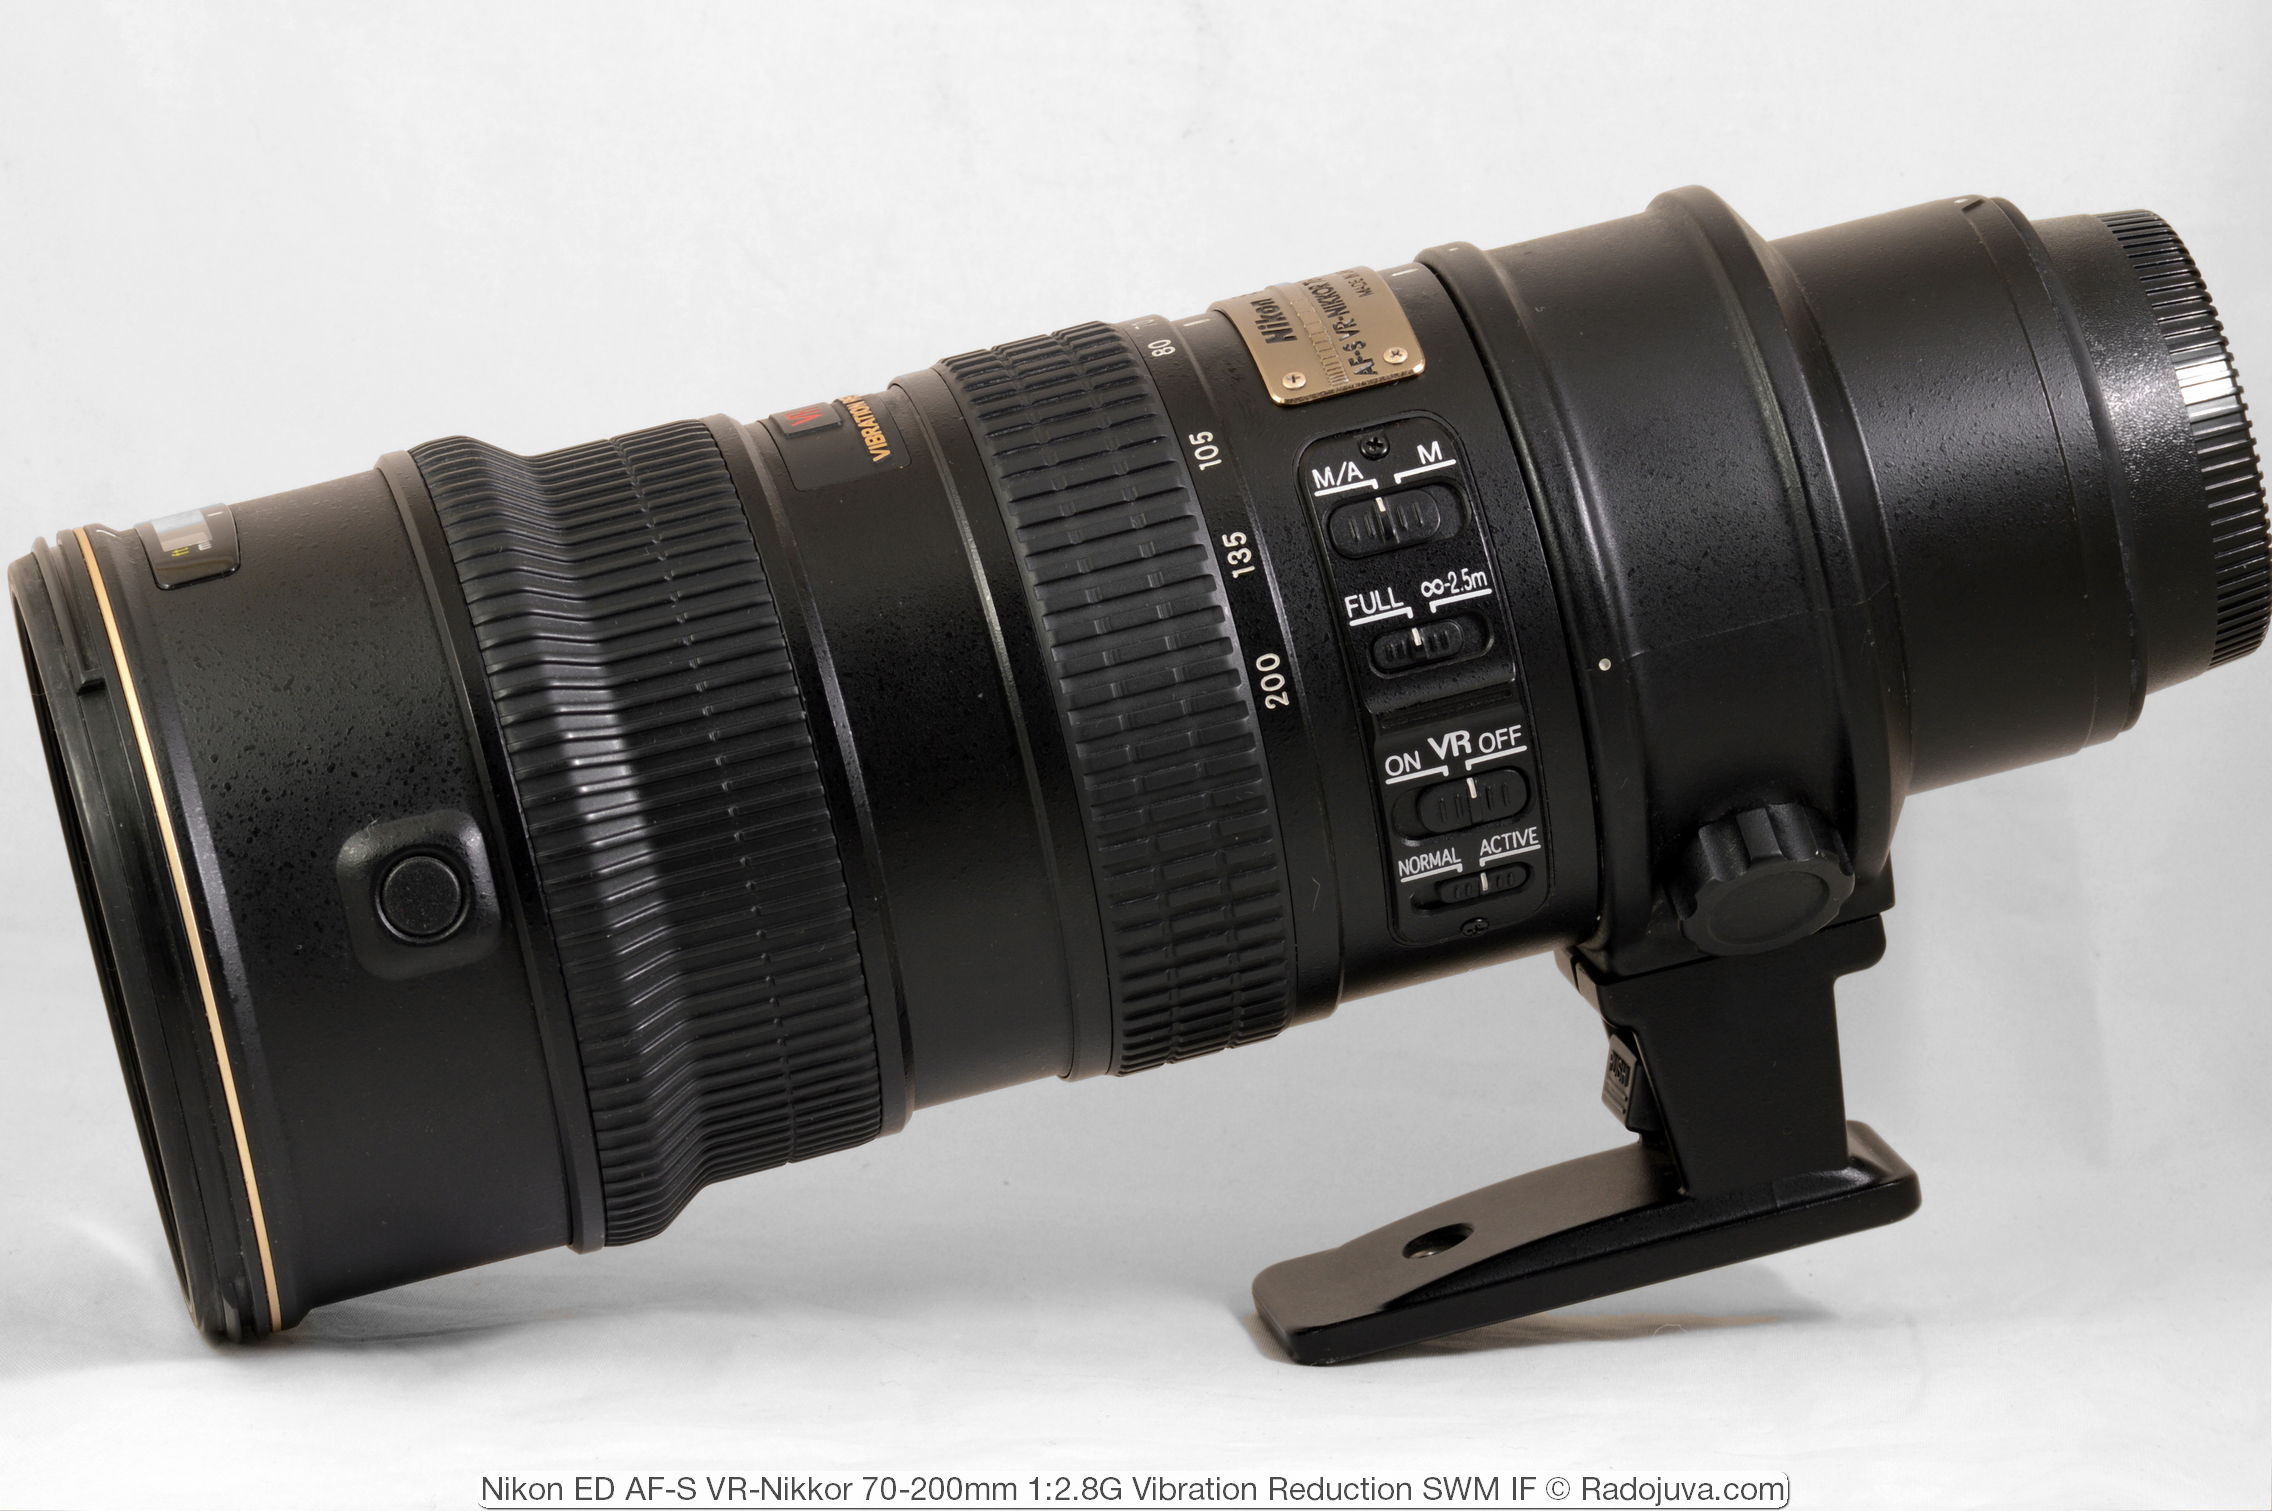 Review of Nikon ED AF-S VR-Nikkor 70-200mm 1: 2.8G (VR1) | Radozhiva